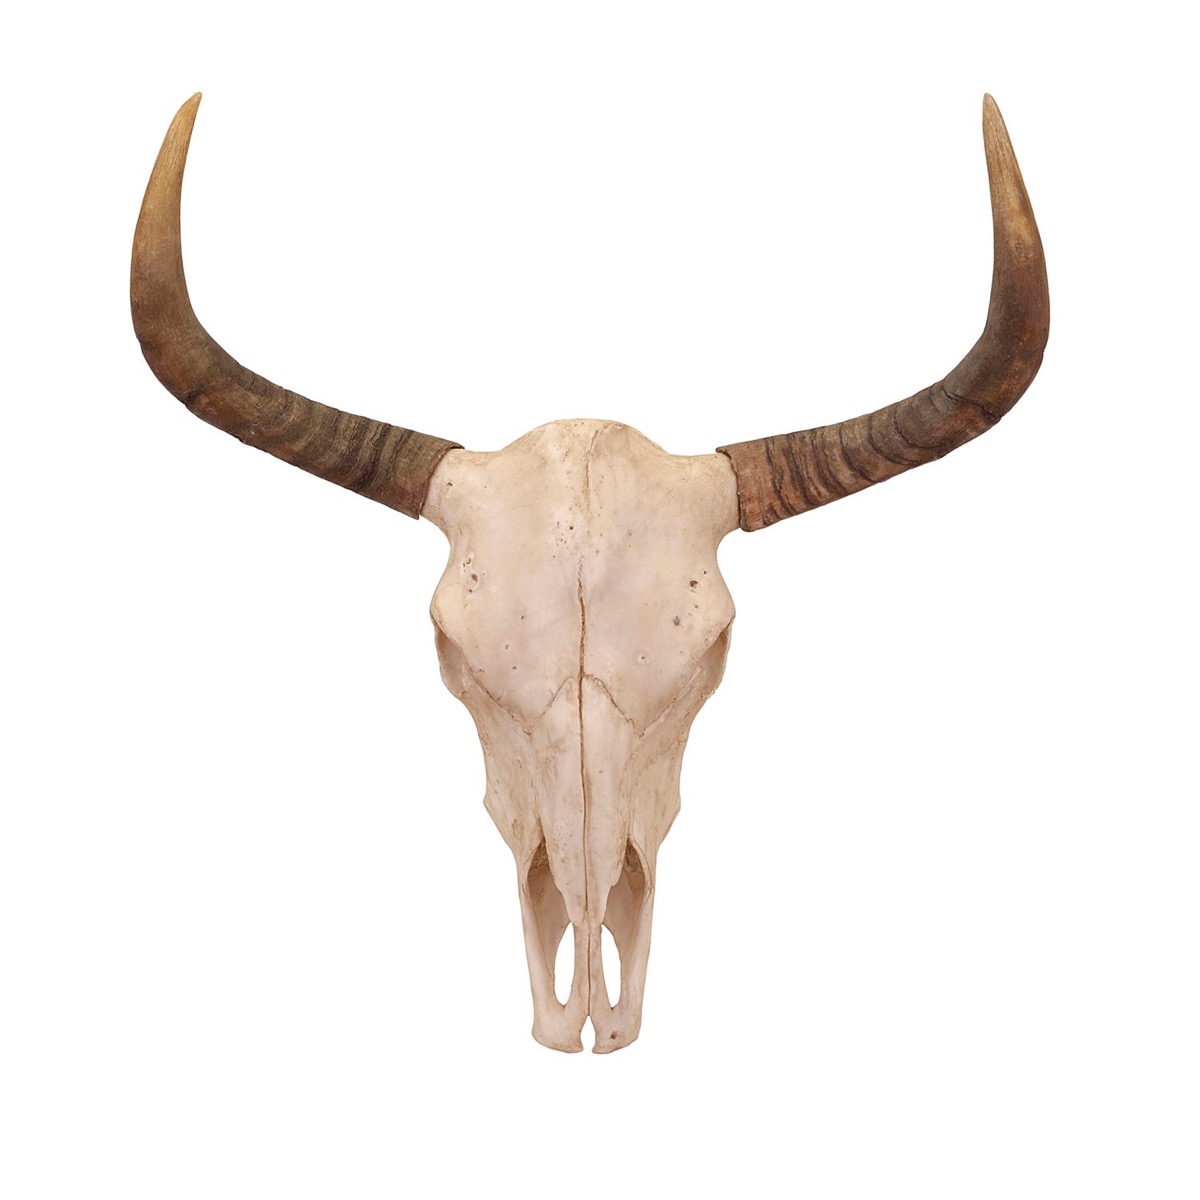 steer skull on white background, rustic farmhouse decor